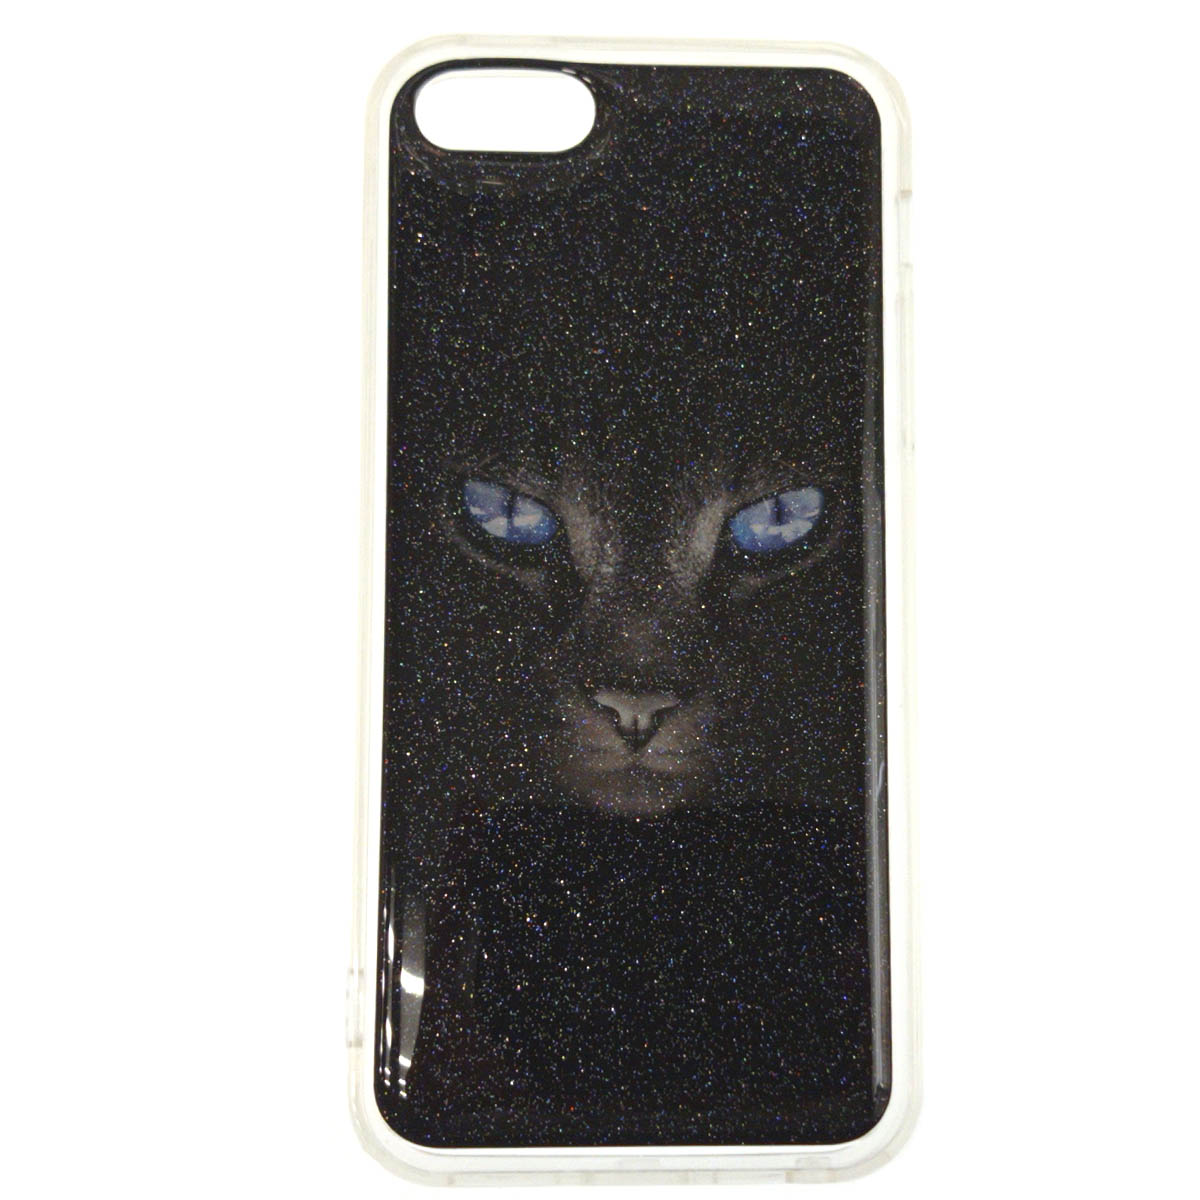 Чехол накладка для APPLE iPhone 5, iPhone 5S, iPhone SE, cиликон, блестки, рисунок черная кошка с голубыми глазами